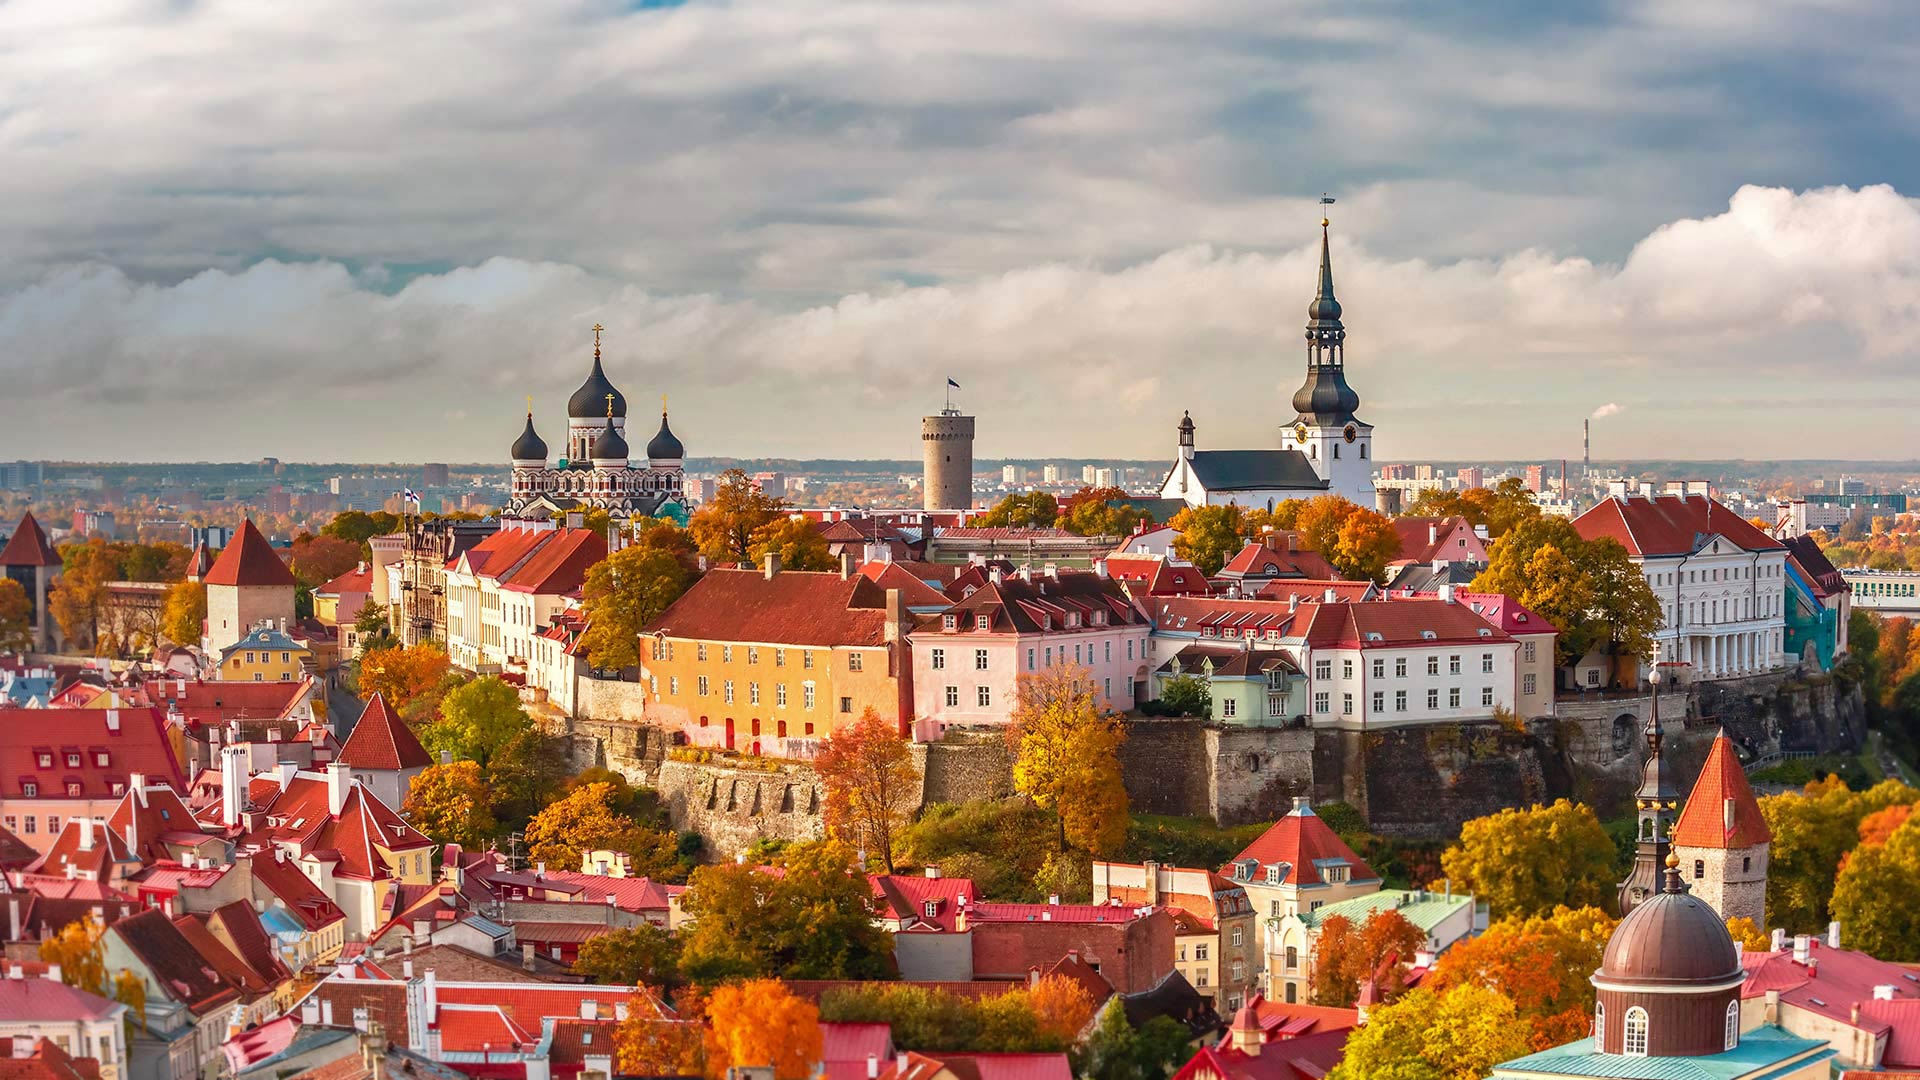 Old Town Tallinn - Tallinn Old Town - HD Wallpaper 